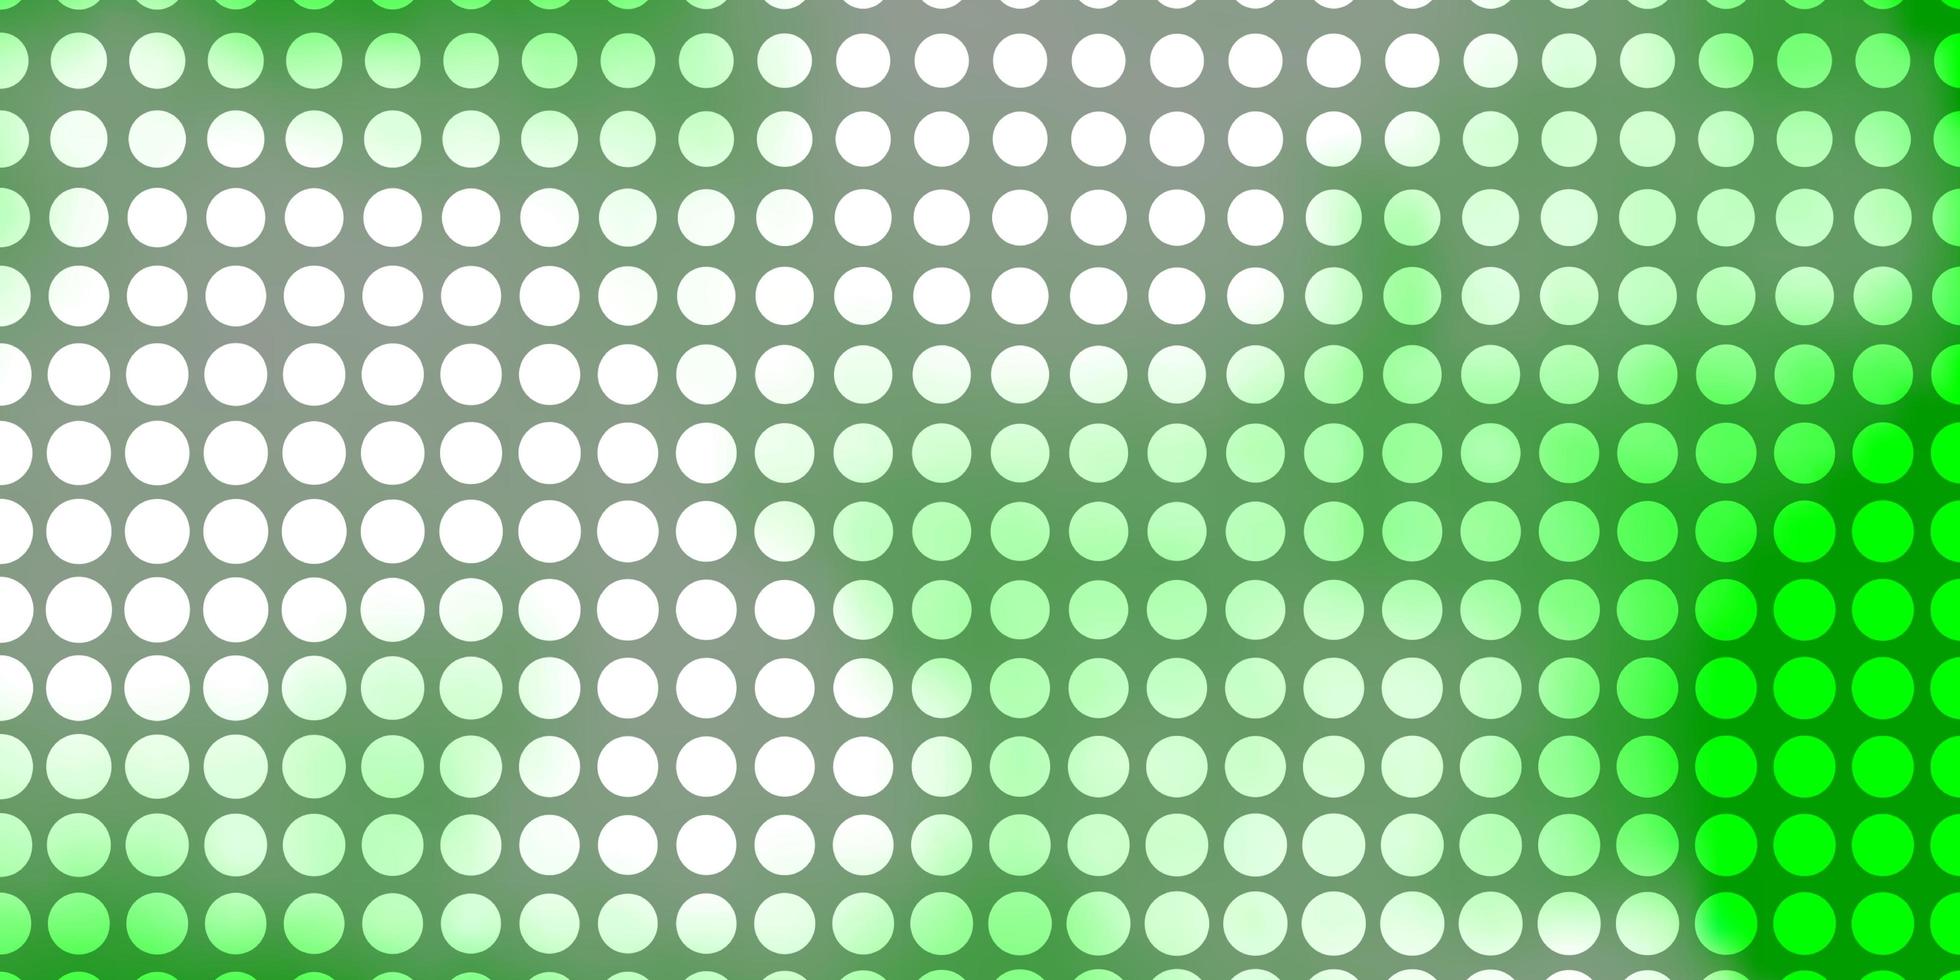 lichtgroen vector sjabloon met cirkels.